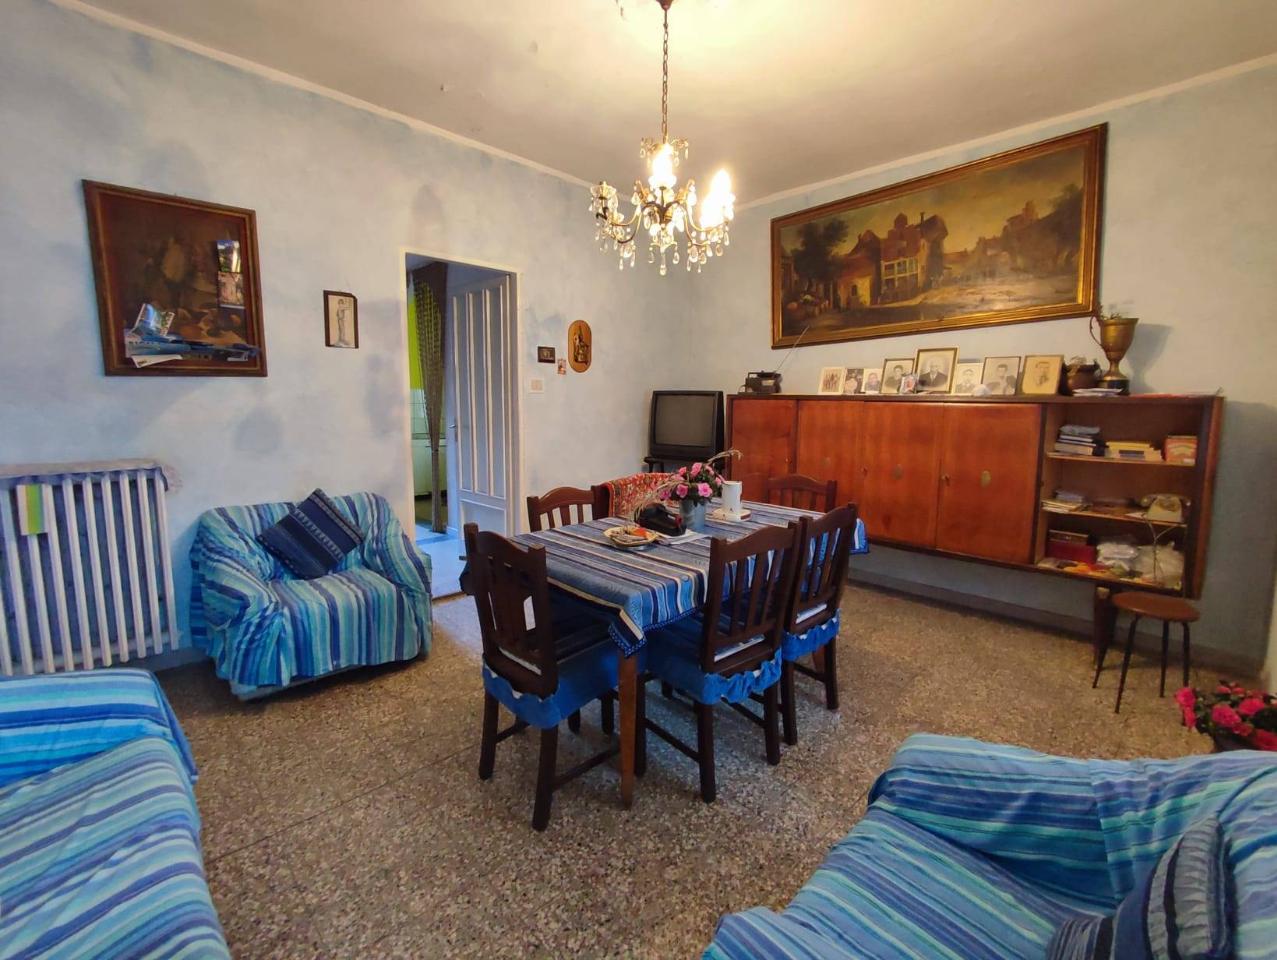 Villa in vendita a Grugliasco